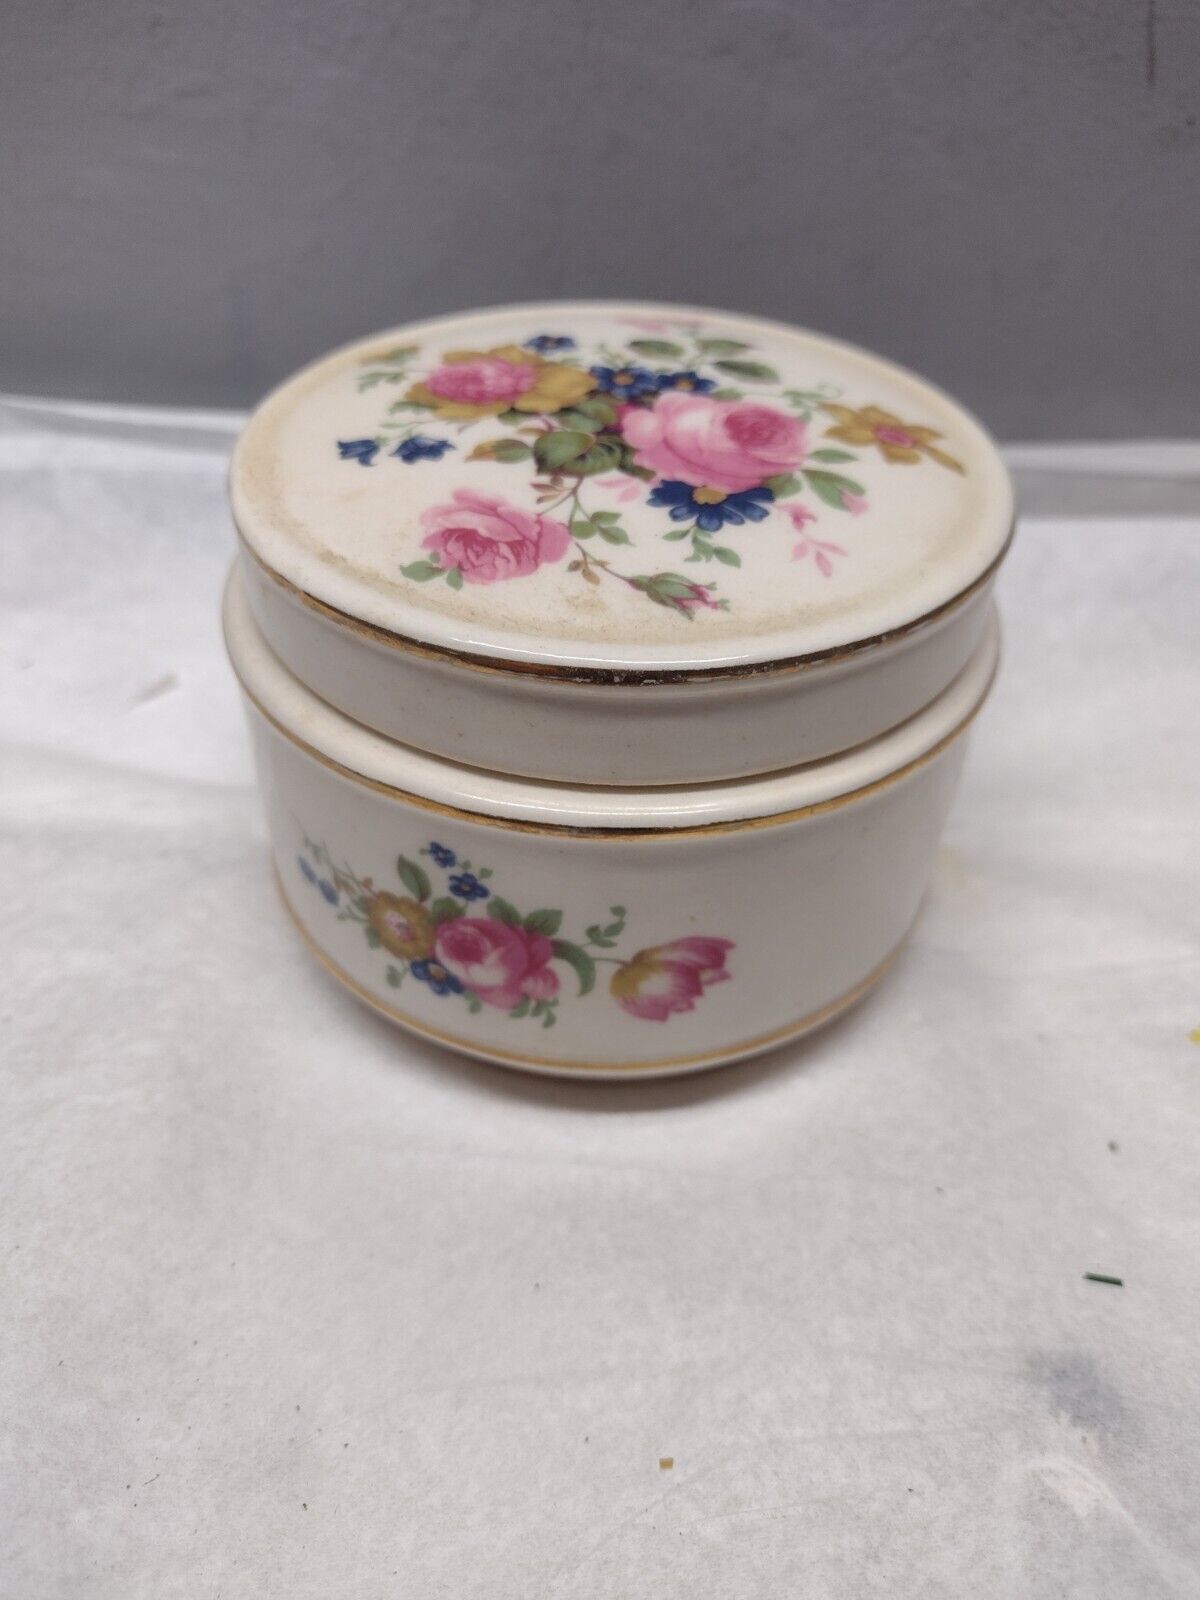 Vintage Sadler England Floral Dresser Pink Roses Trinket Box Dish Gold Trim